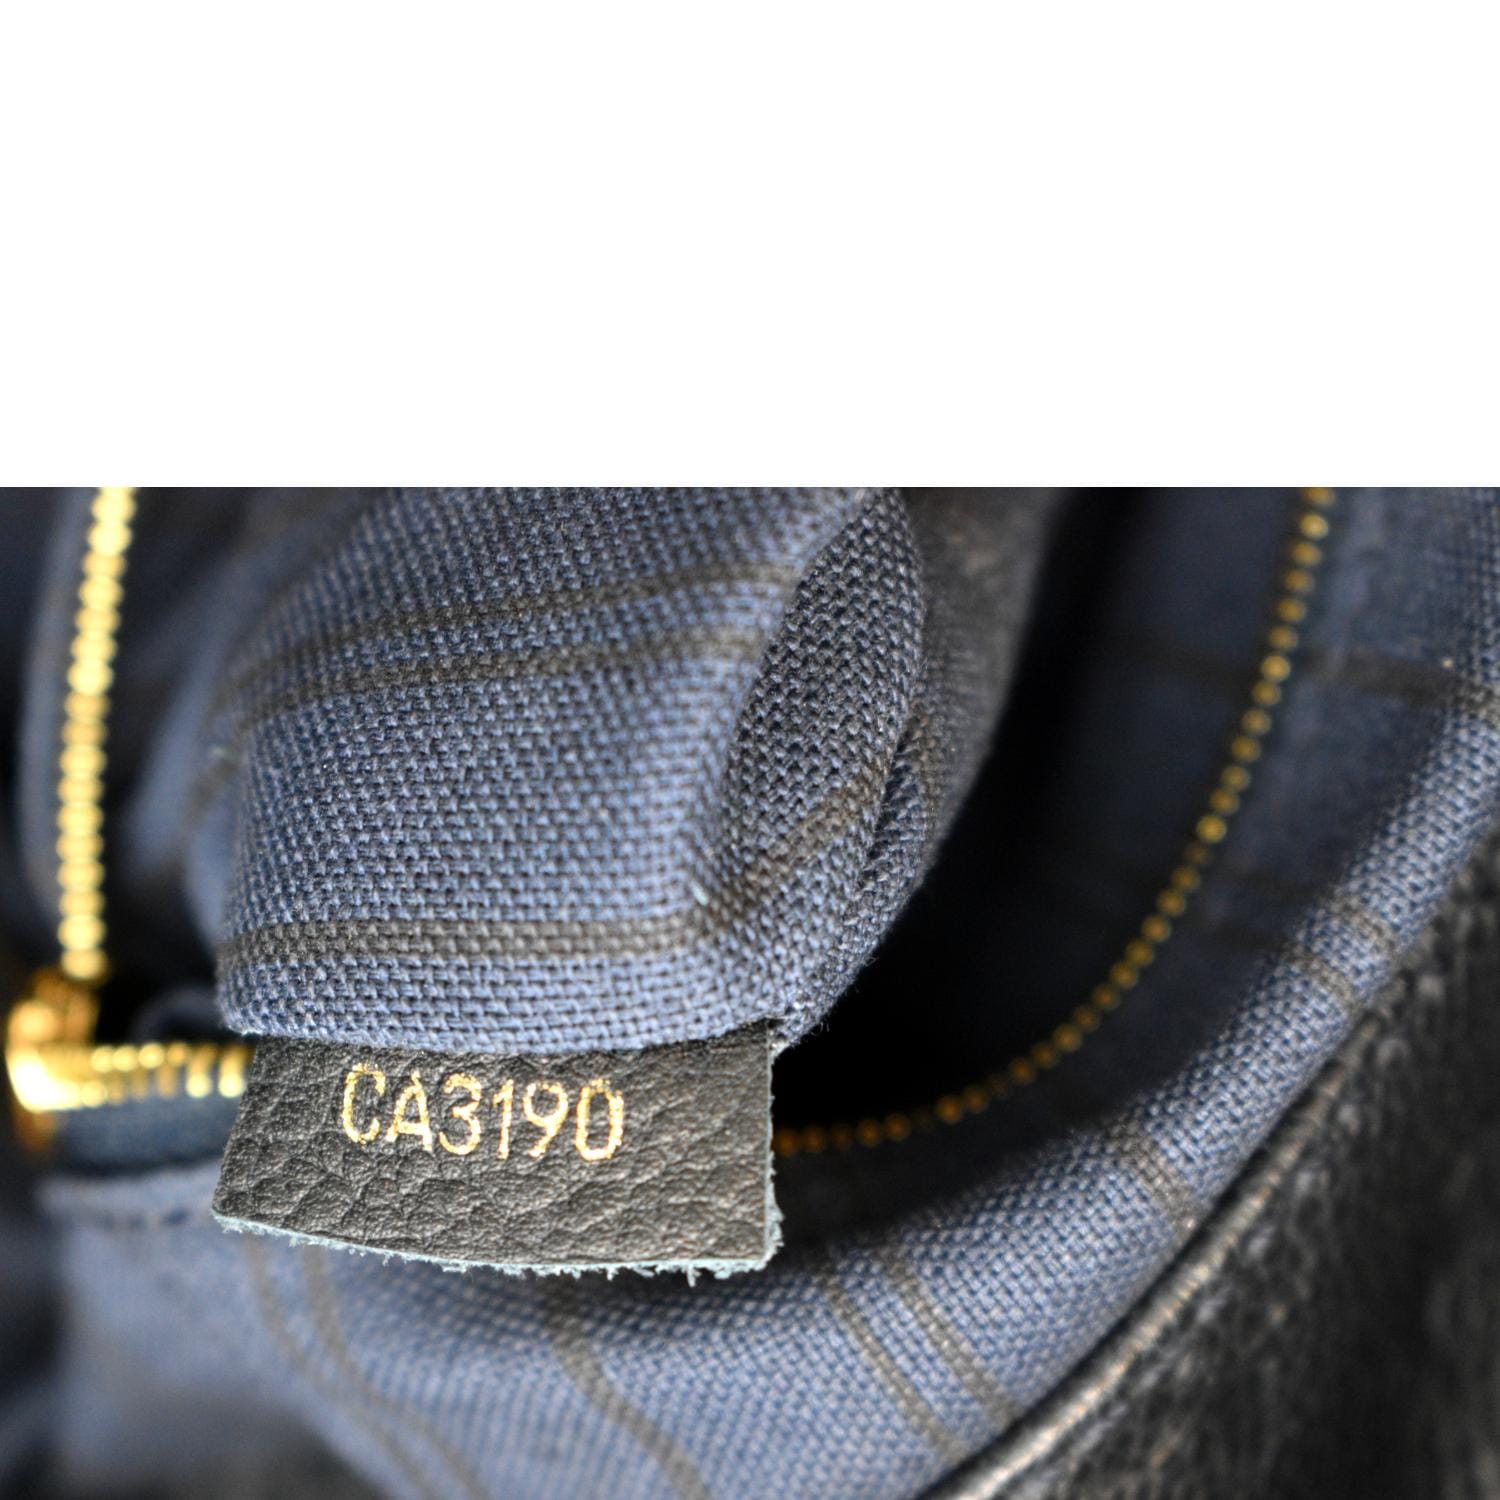 Brown Louis Vuitton Monogram Empreinte Artsy MM Hobo Bag – Designer Revival